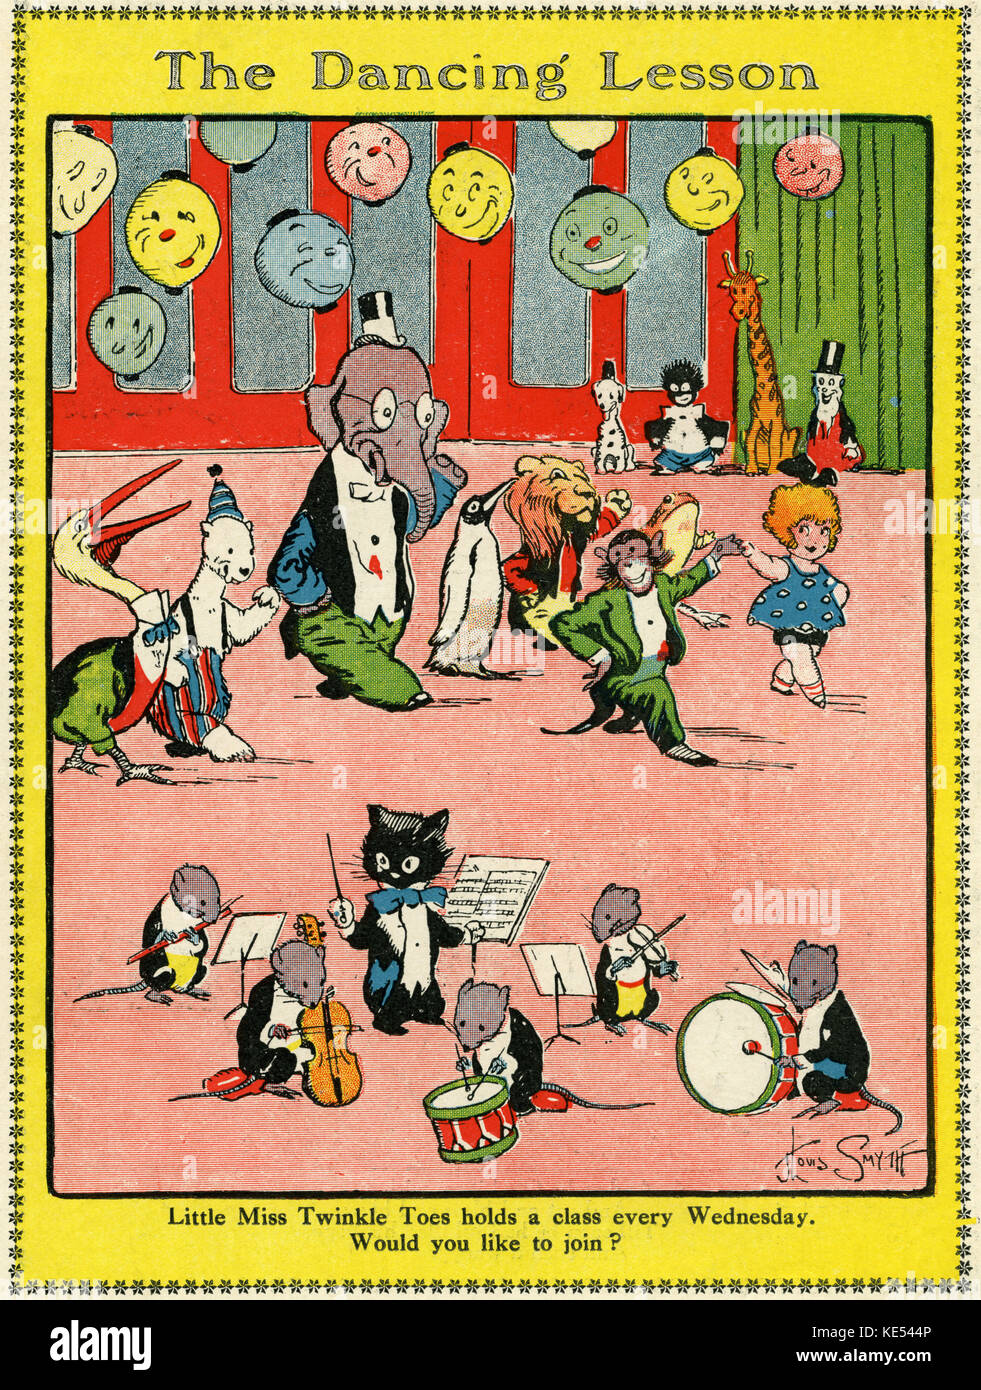 Die tanzenden Lektion. Aus dem Wunderland 1923 Jährliche. Bildunterschrift: Little Miss Twinkle Toes hält eine Klasse jeden Mittwoch. Möchten Sie Mitglied werden? Katze und Maus Orchester, Geld und Löwen und Elefanten tanzen. Stockfoto